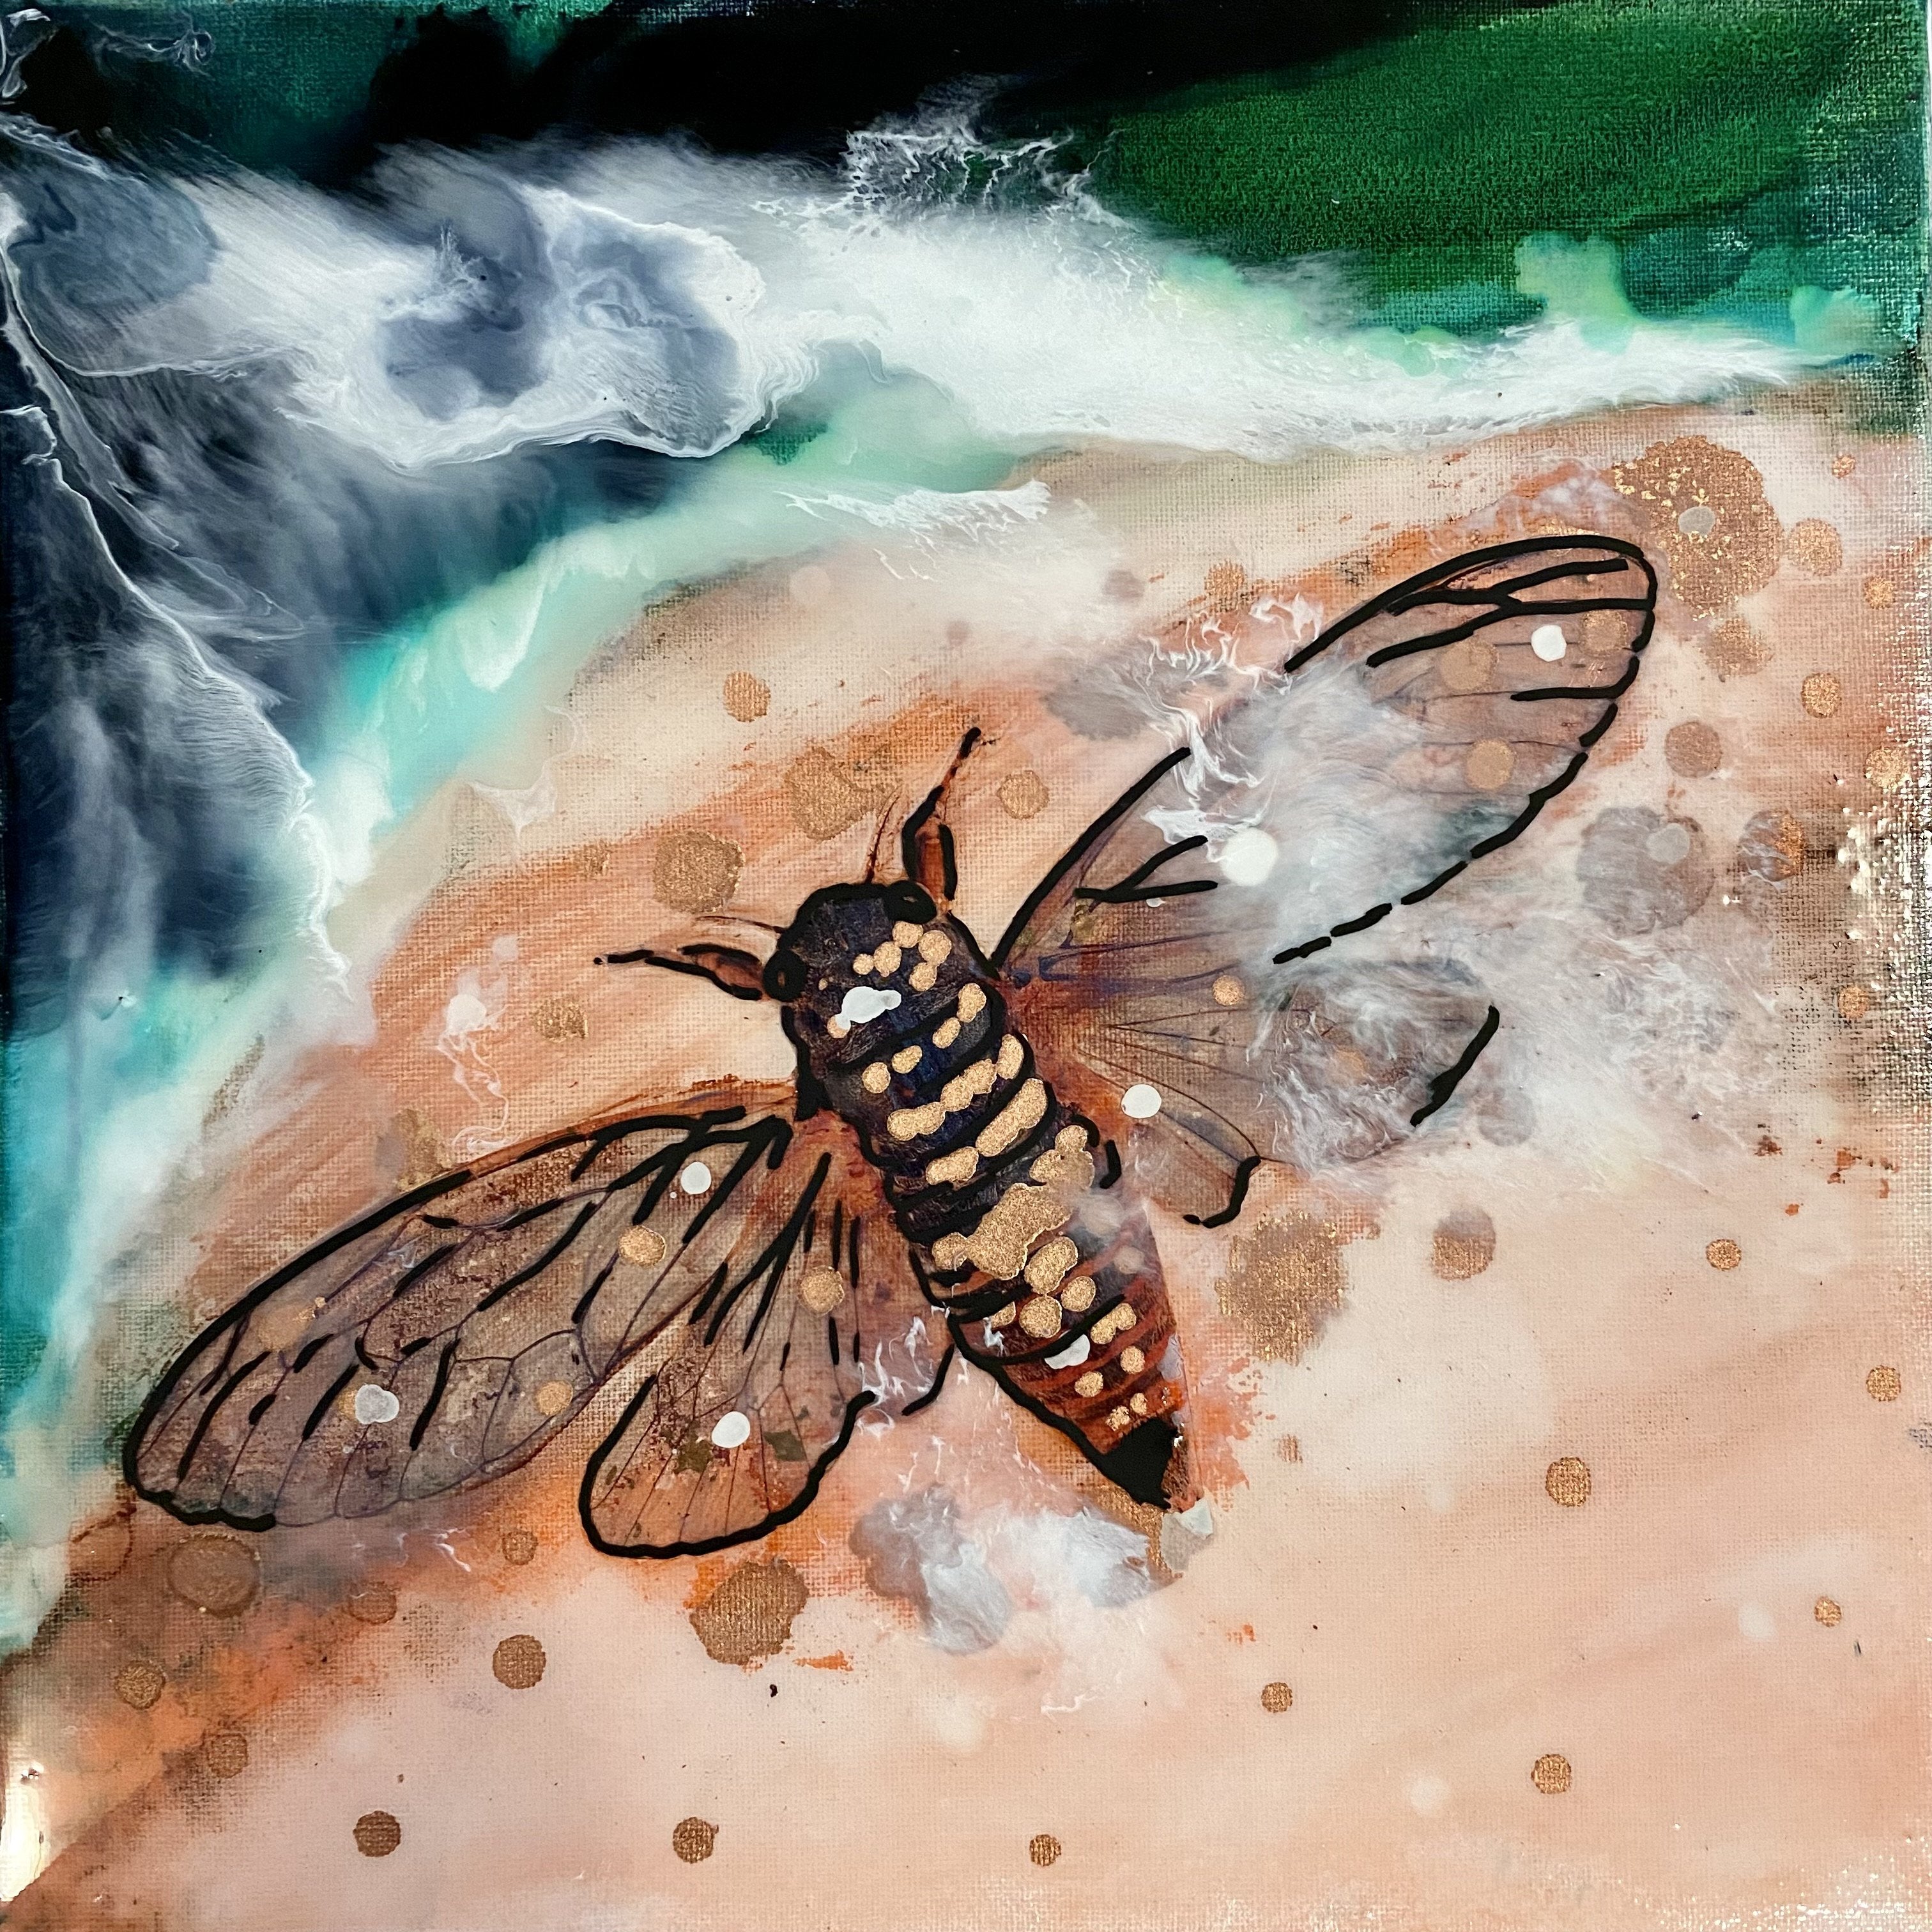 Close to Extinction - Cicada. Seascape